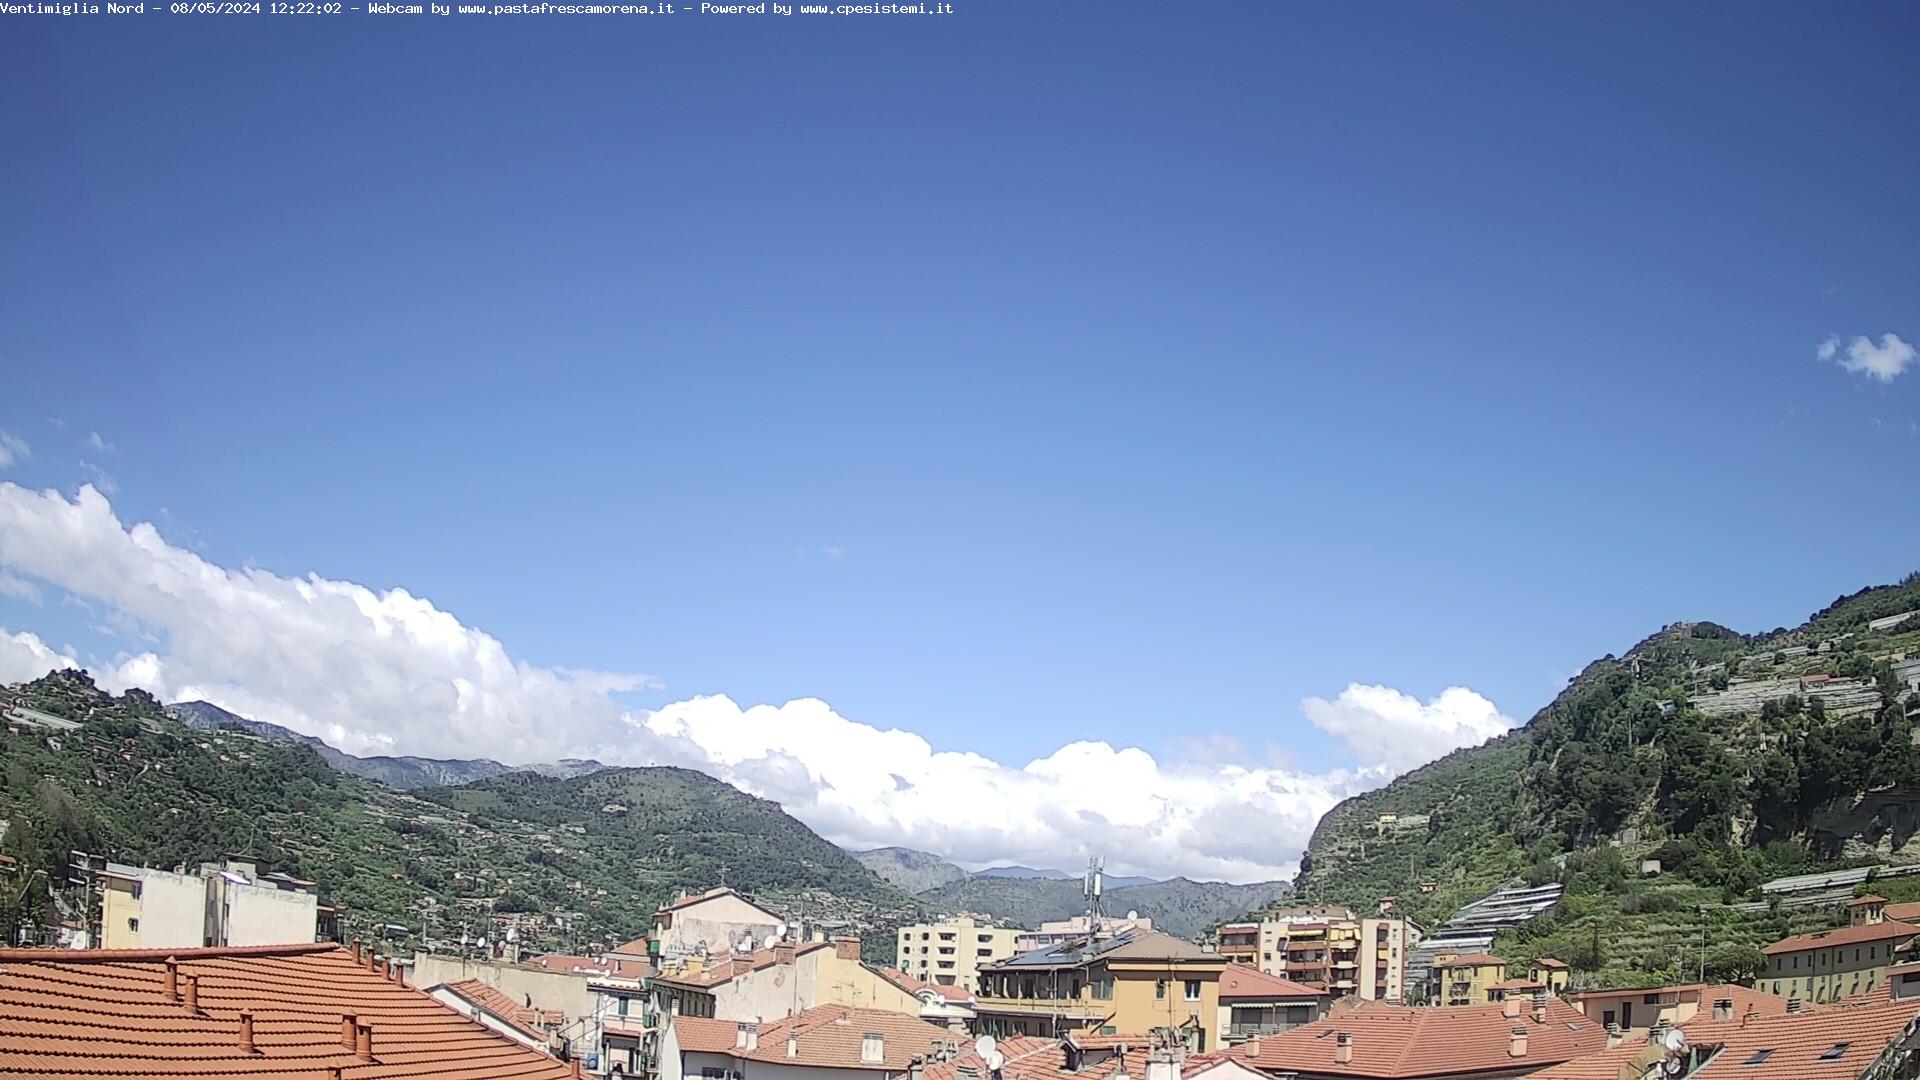 Webcam Ventimiglia Nord